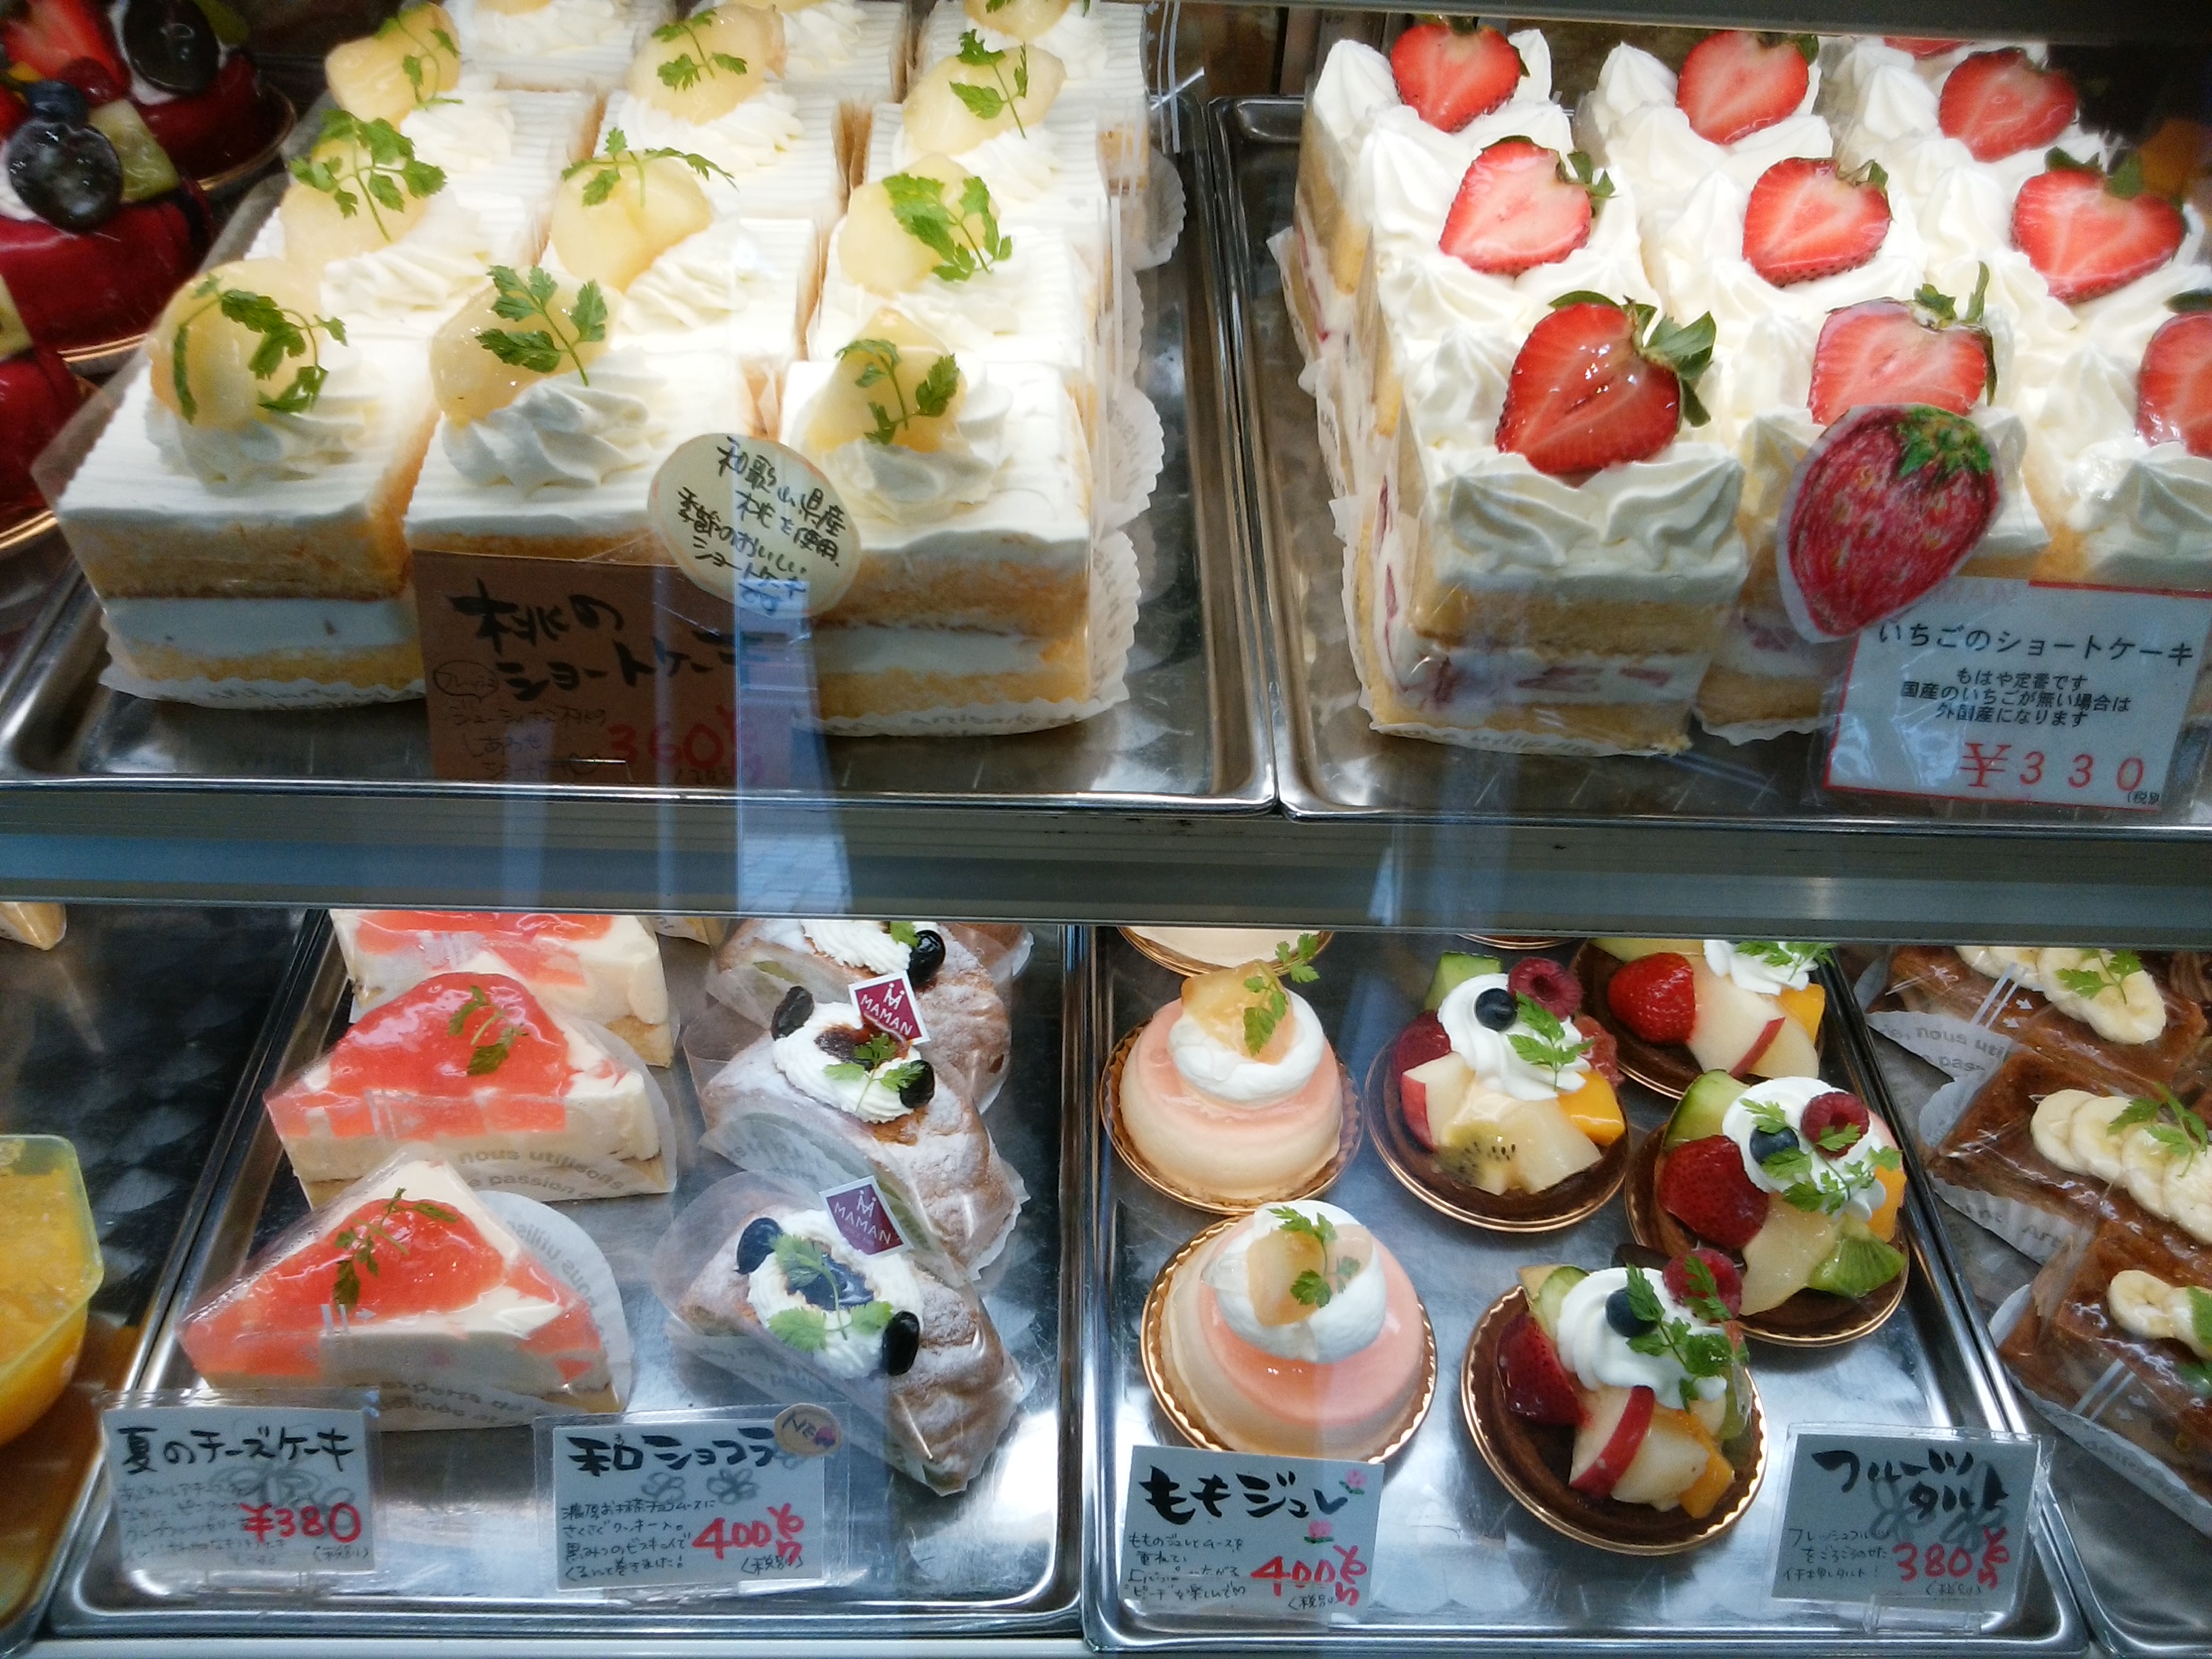 ママン洋菓子店 桜井市 三度の飯よりケーキ好き 三重県にもっとケーキバイキングを